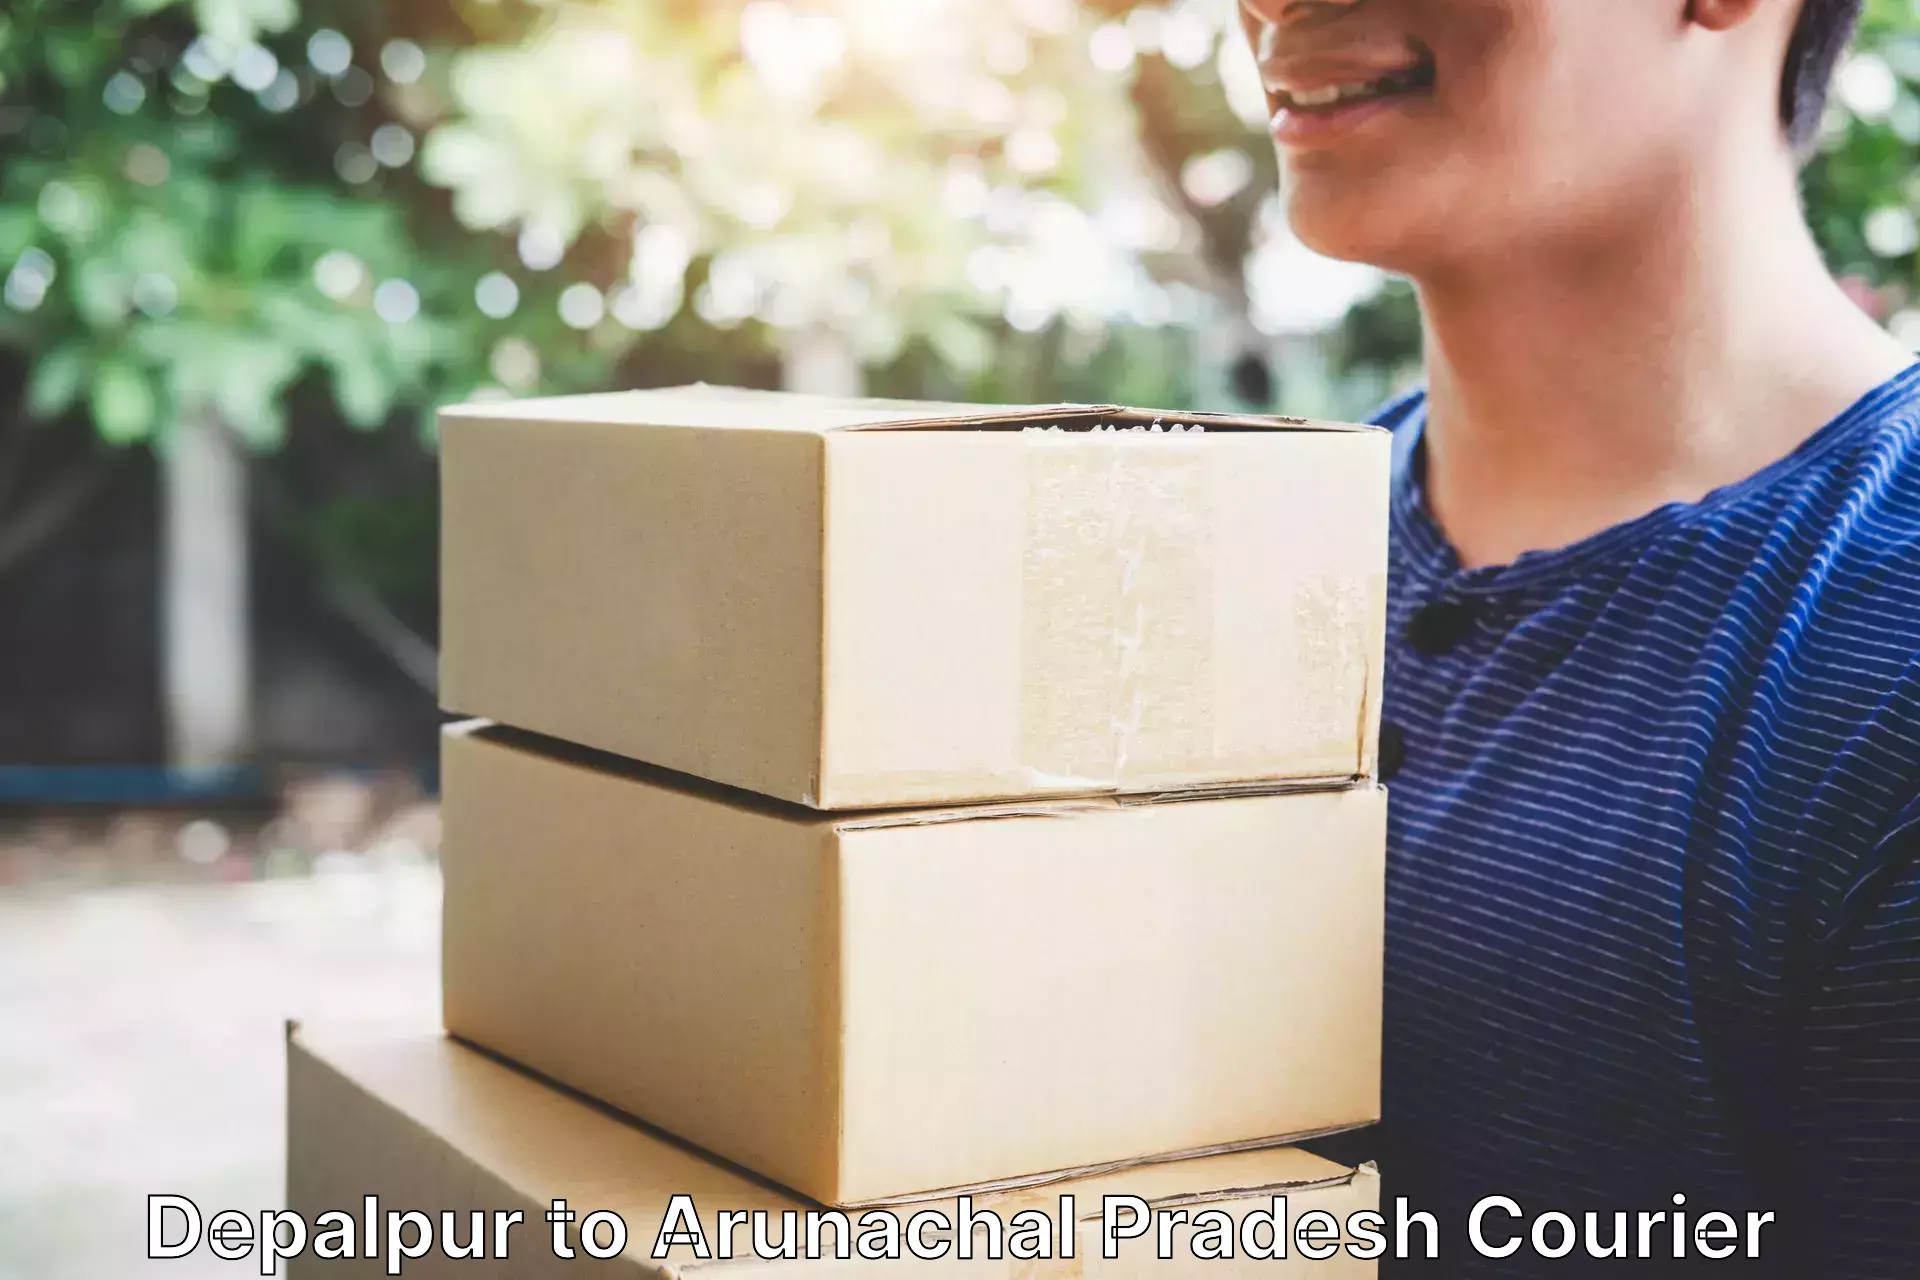 Professional courier handling in Depalpur to Arunachal Pradesh